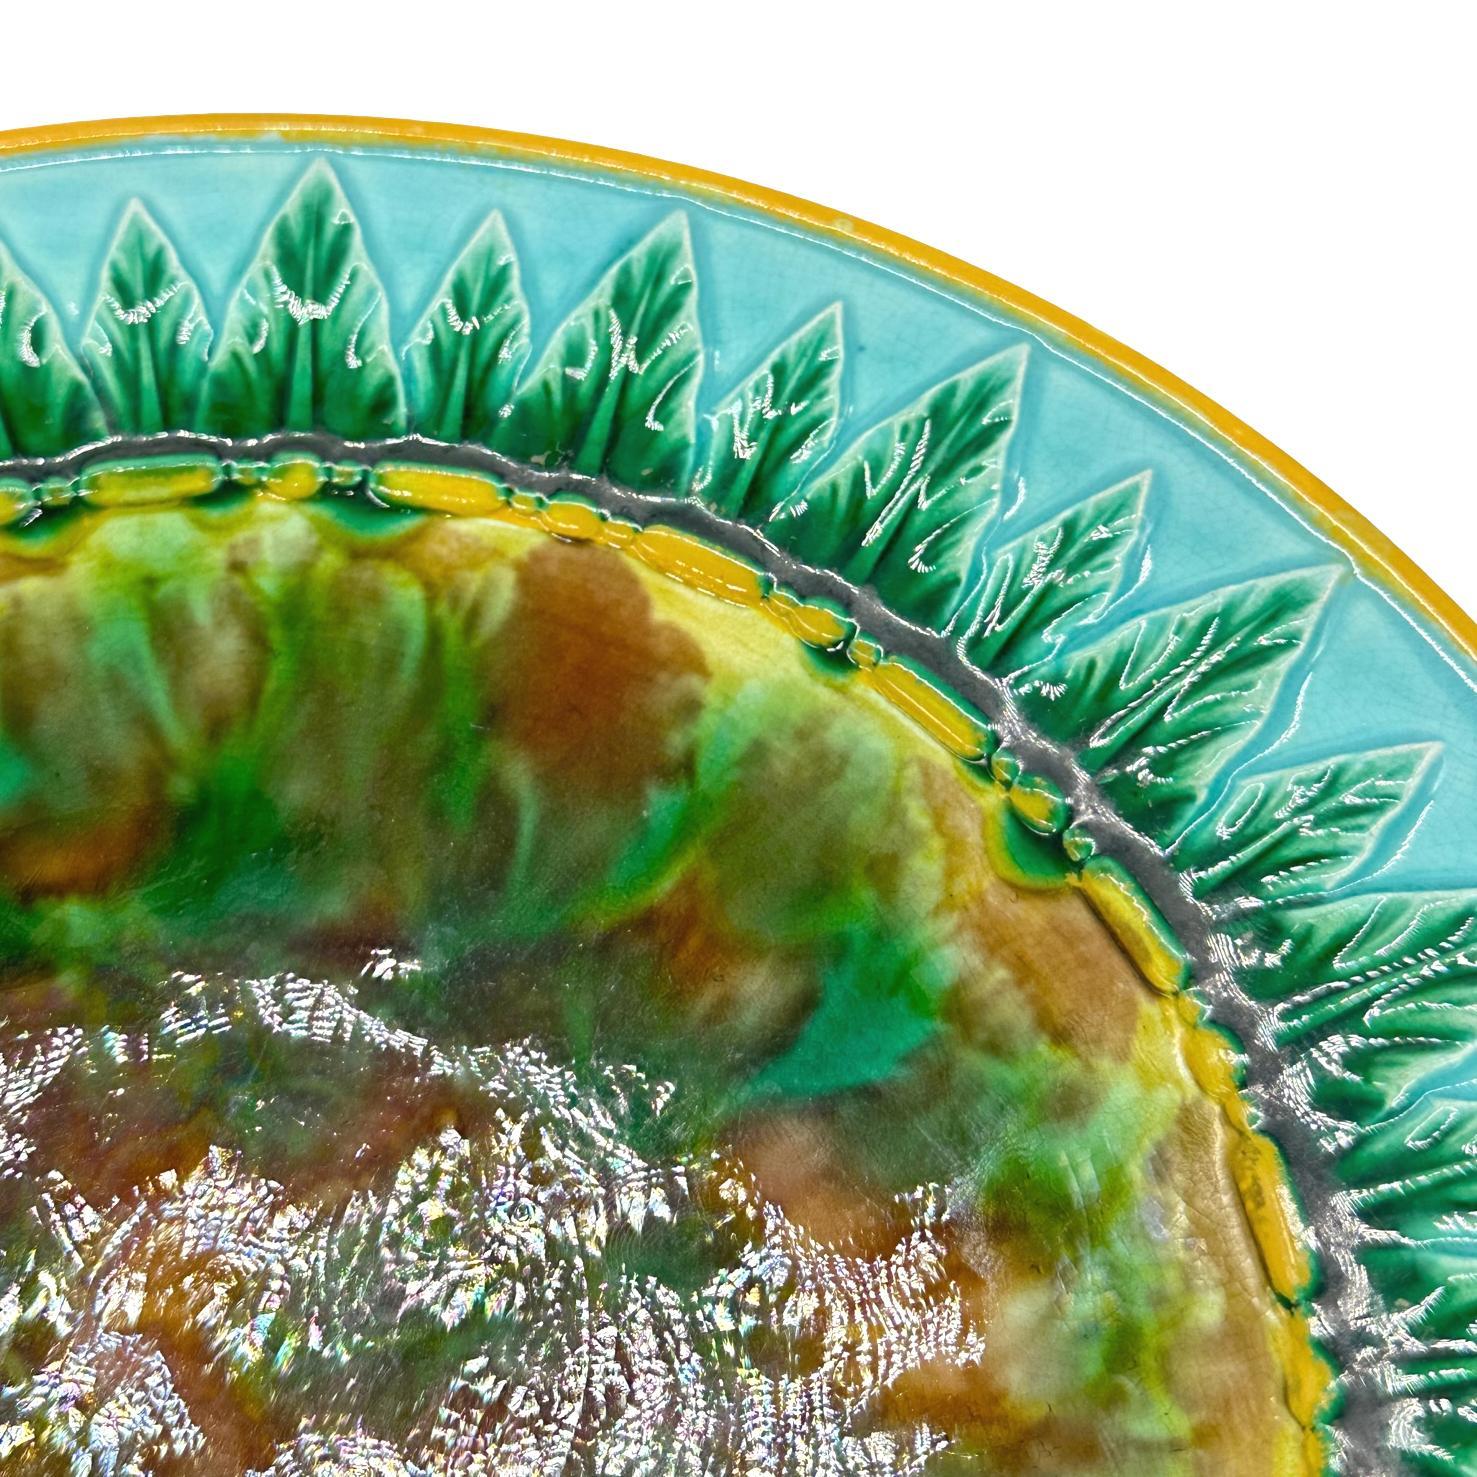 George Jones Majolica Plate, Tortoiseshell Mottling, Green Leaves on Turquoise For Sale 1